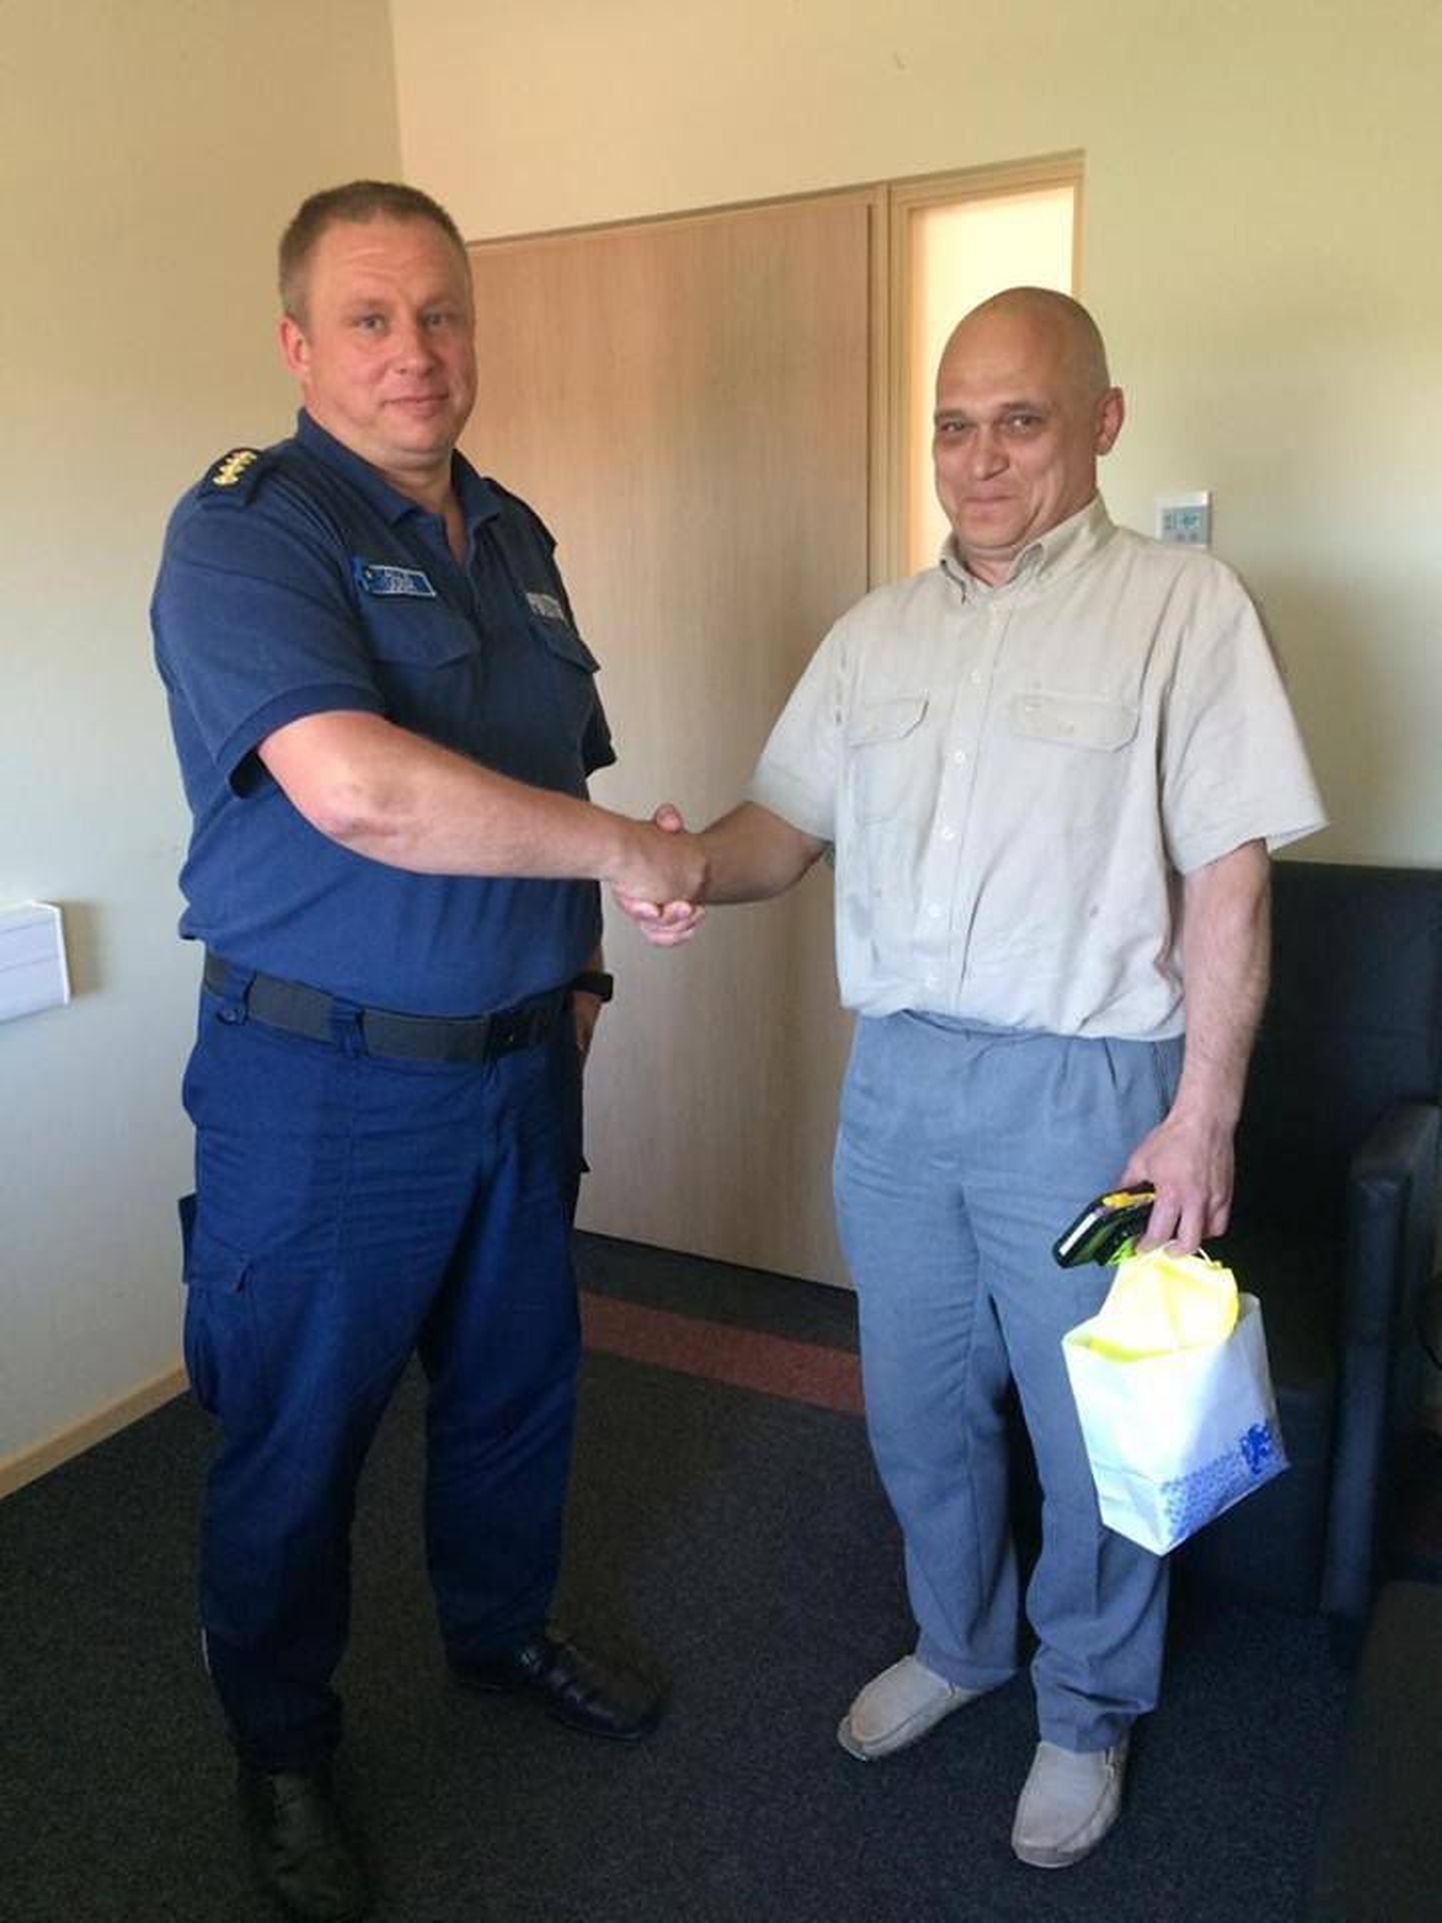 Руководитель Йыхвиского отдела полиции Калле Куусик решил лично поблагодарить Дмитрия за отзывчивость и готовность помочь.